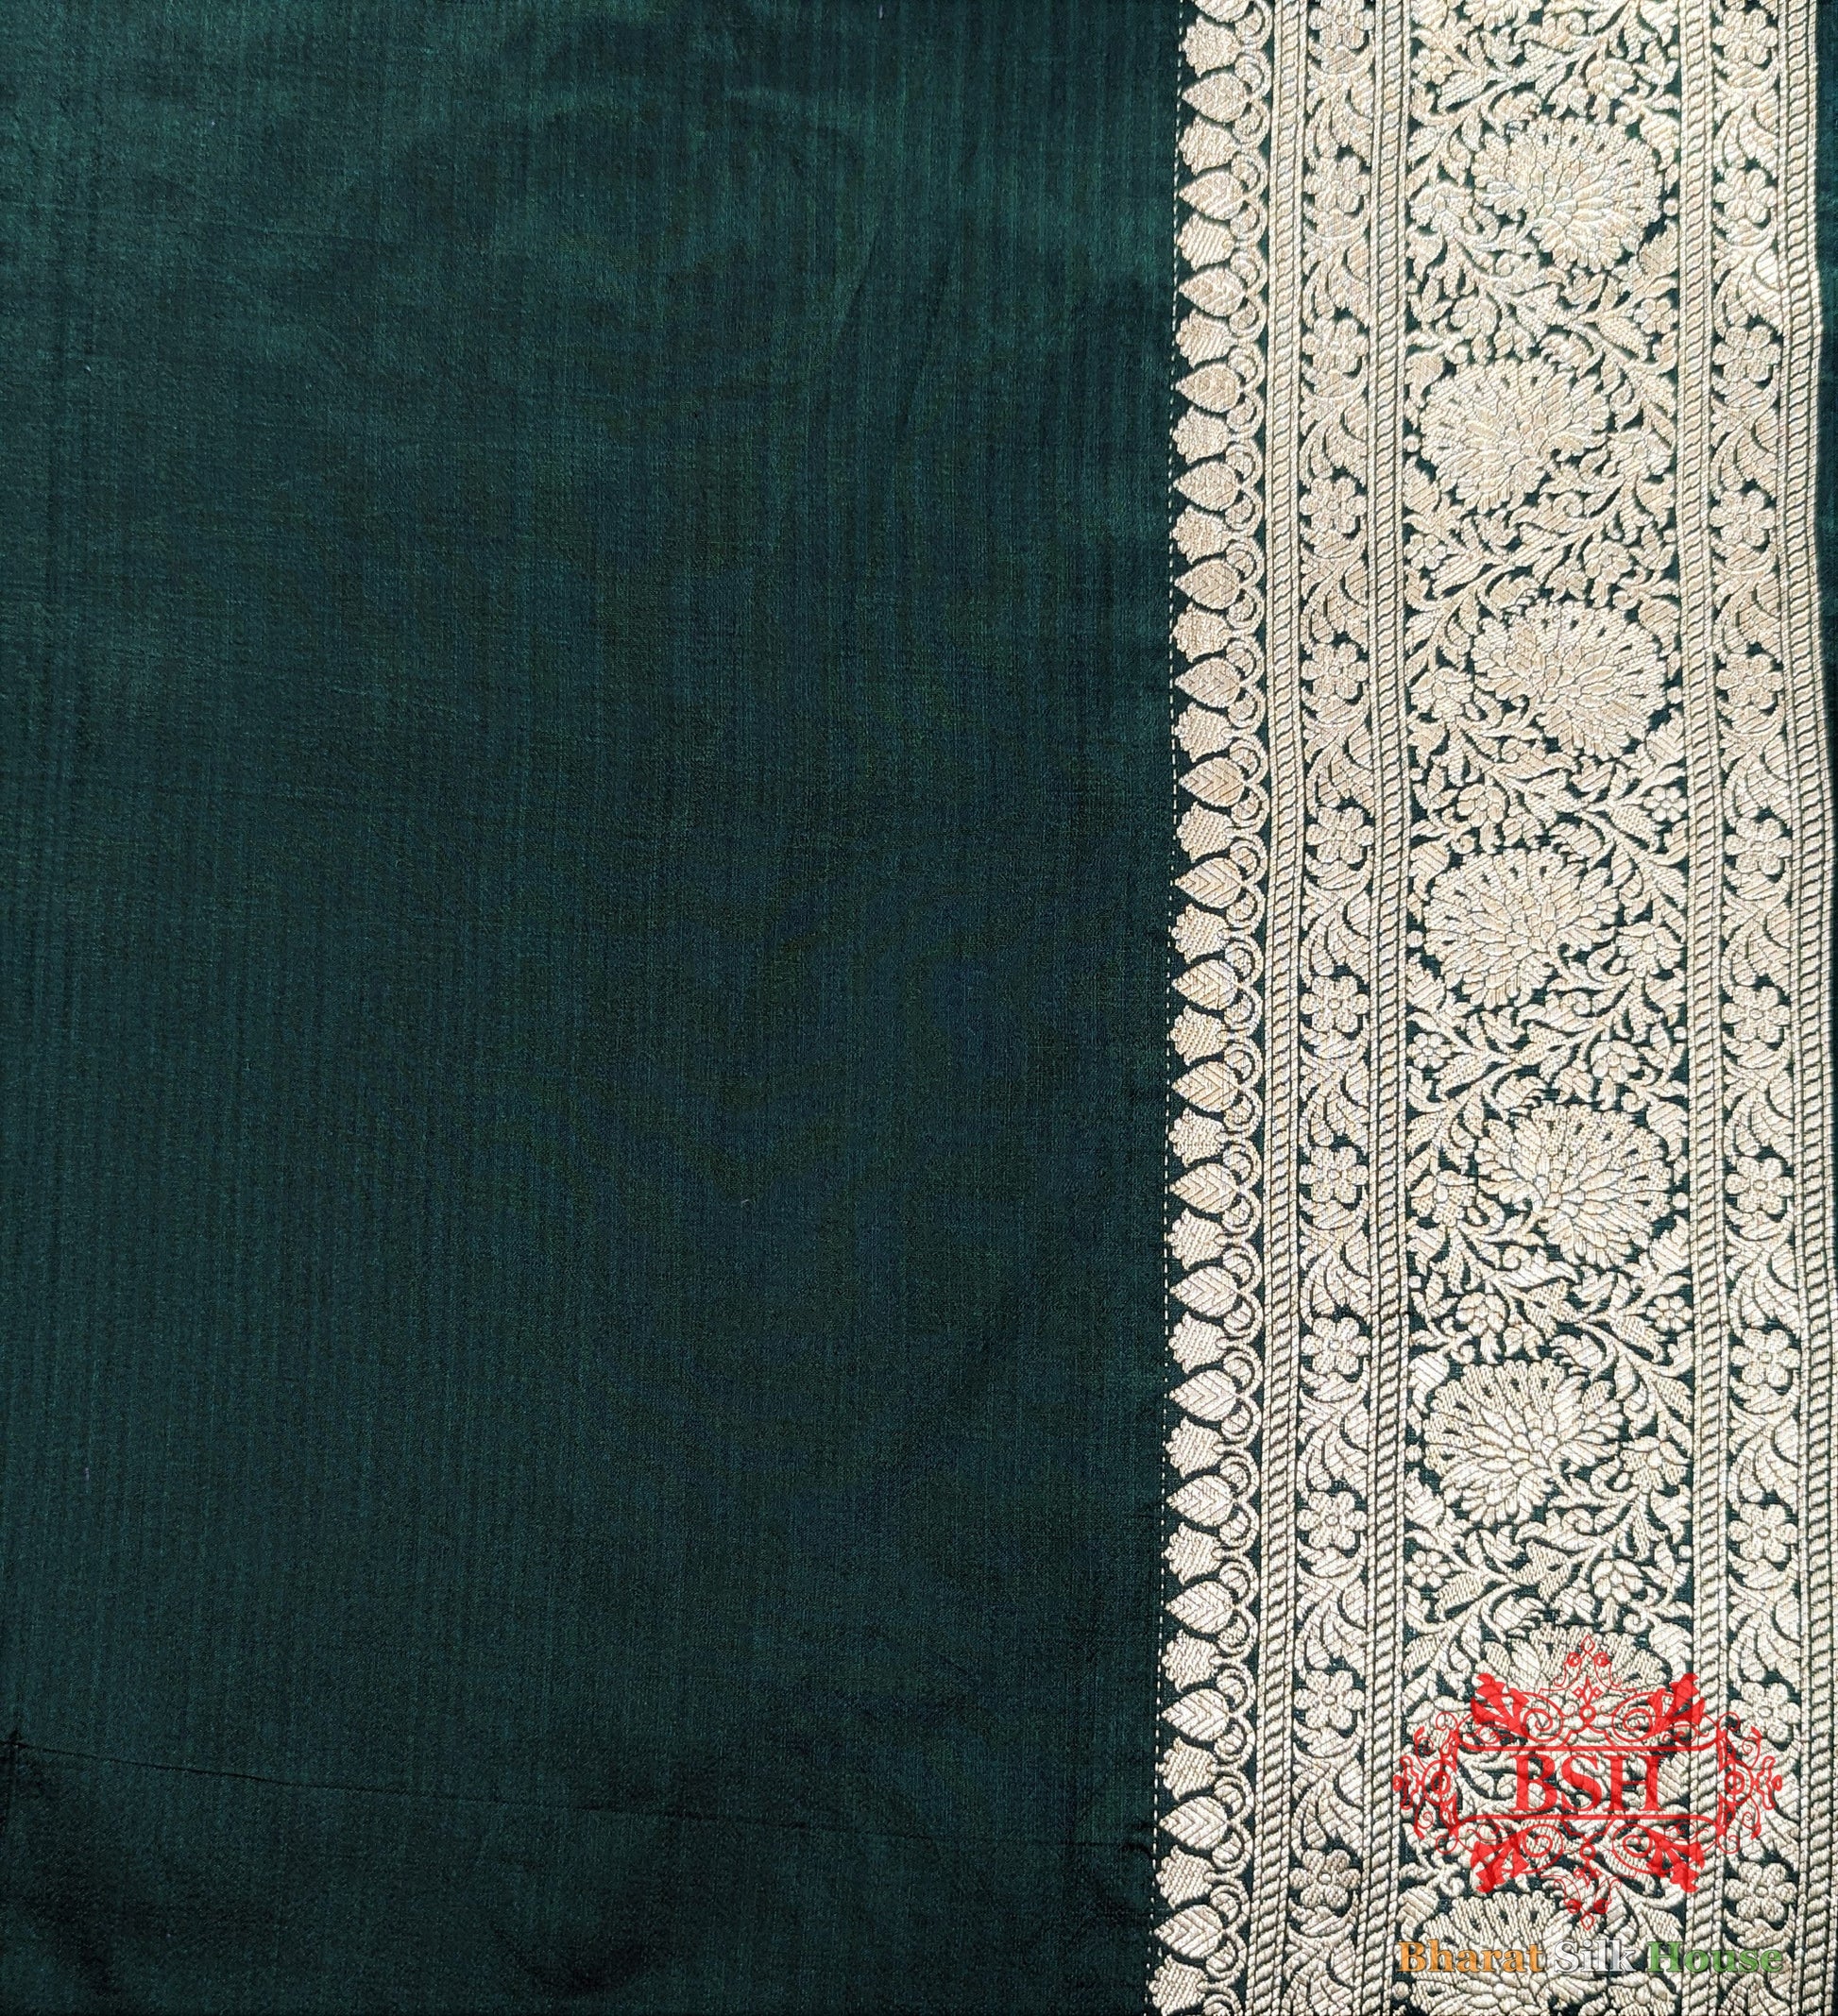 Handloom Banarasi Pure Katan Silk Opara With Floral Jaal In Shades Of Green Pure Kataan Silk Bharat Silk House